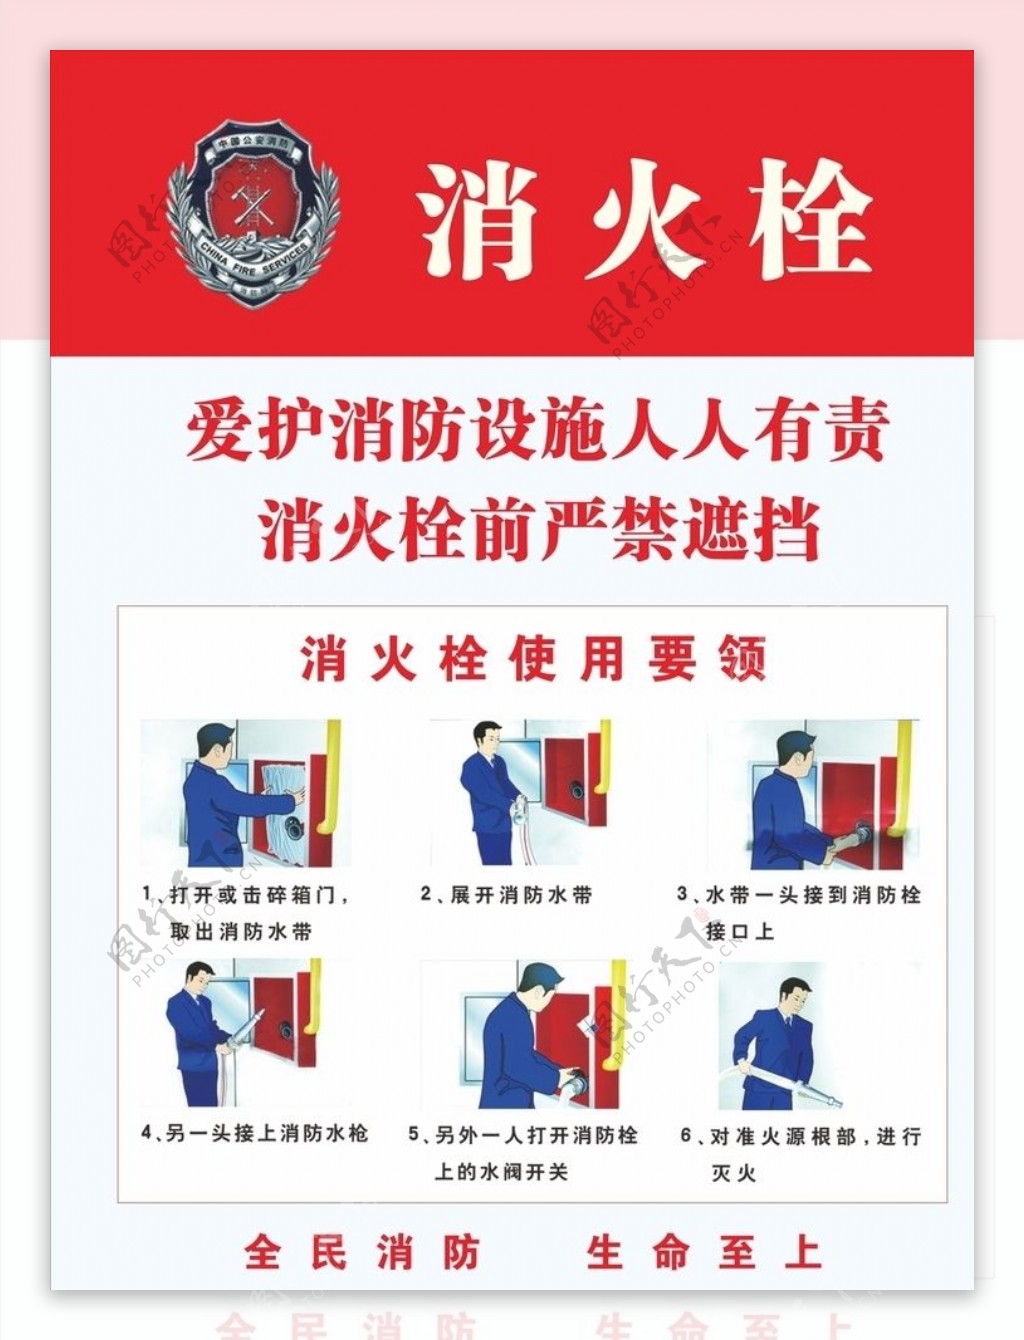 消防栓使用说明消防栓使用要领图片